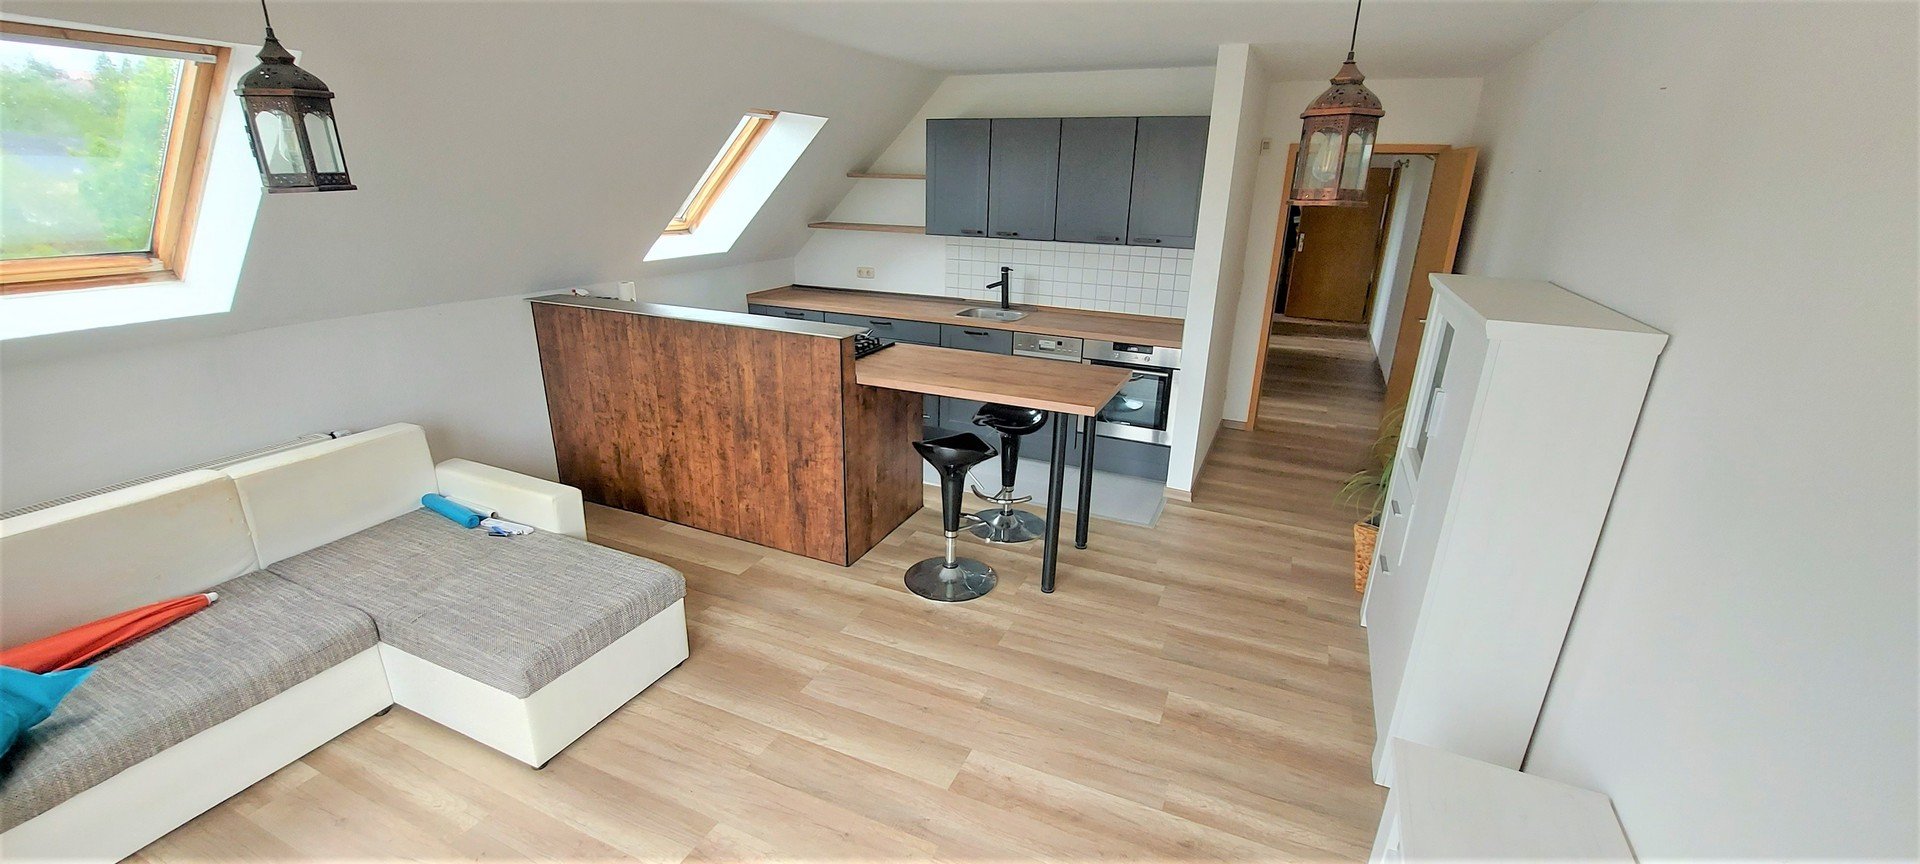 WSF / 54 m² / 2 Zimmer / Dachterrasse / Bad mit Wanne / WC separat / Keller